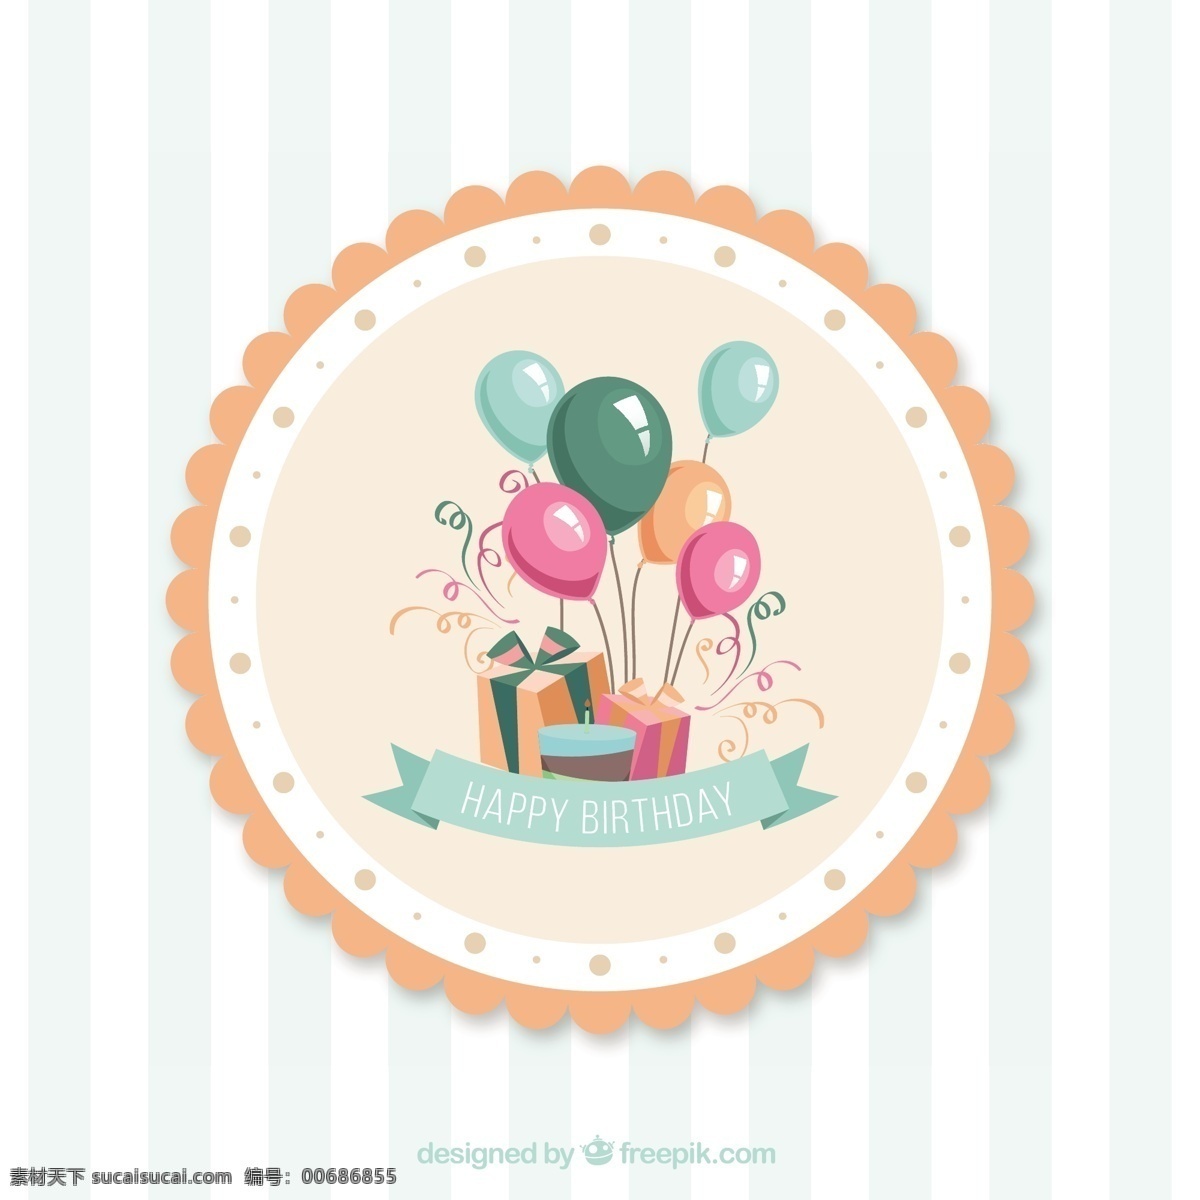 一块 绿色 蛋糕 盒子 后面 条 形状 生日 生日快乐 鲜花 卡片 礼品 卡通 快乐 气球 蝴蝶结 礼品卡 生日卡 蜡烛 生日蛋糕 垂直 幼稚 精细 白色